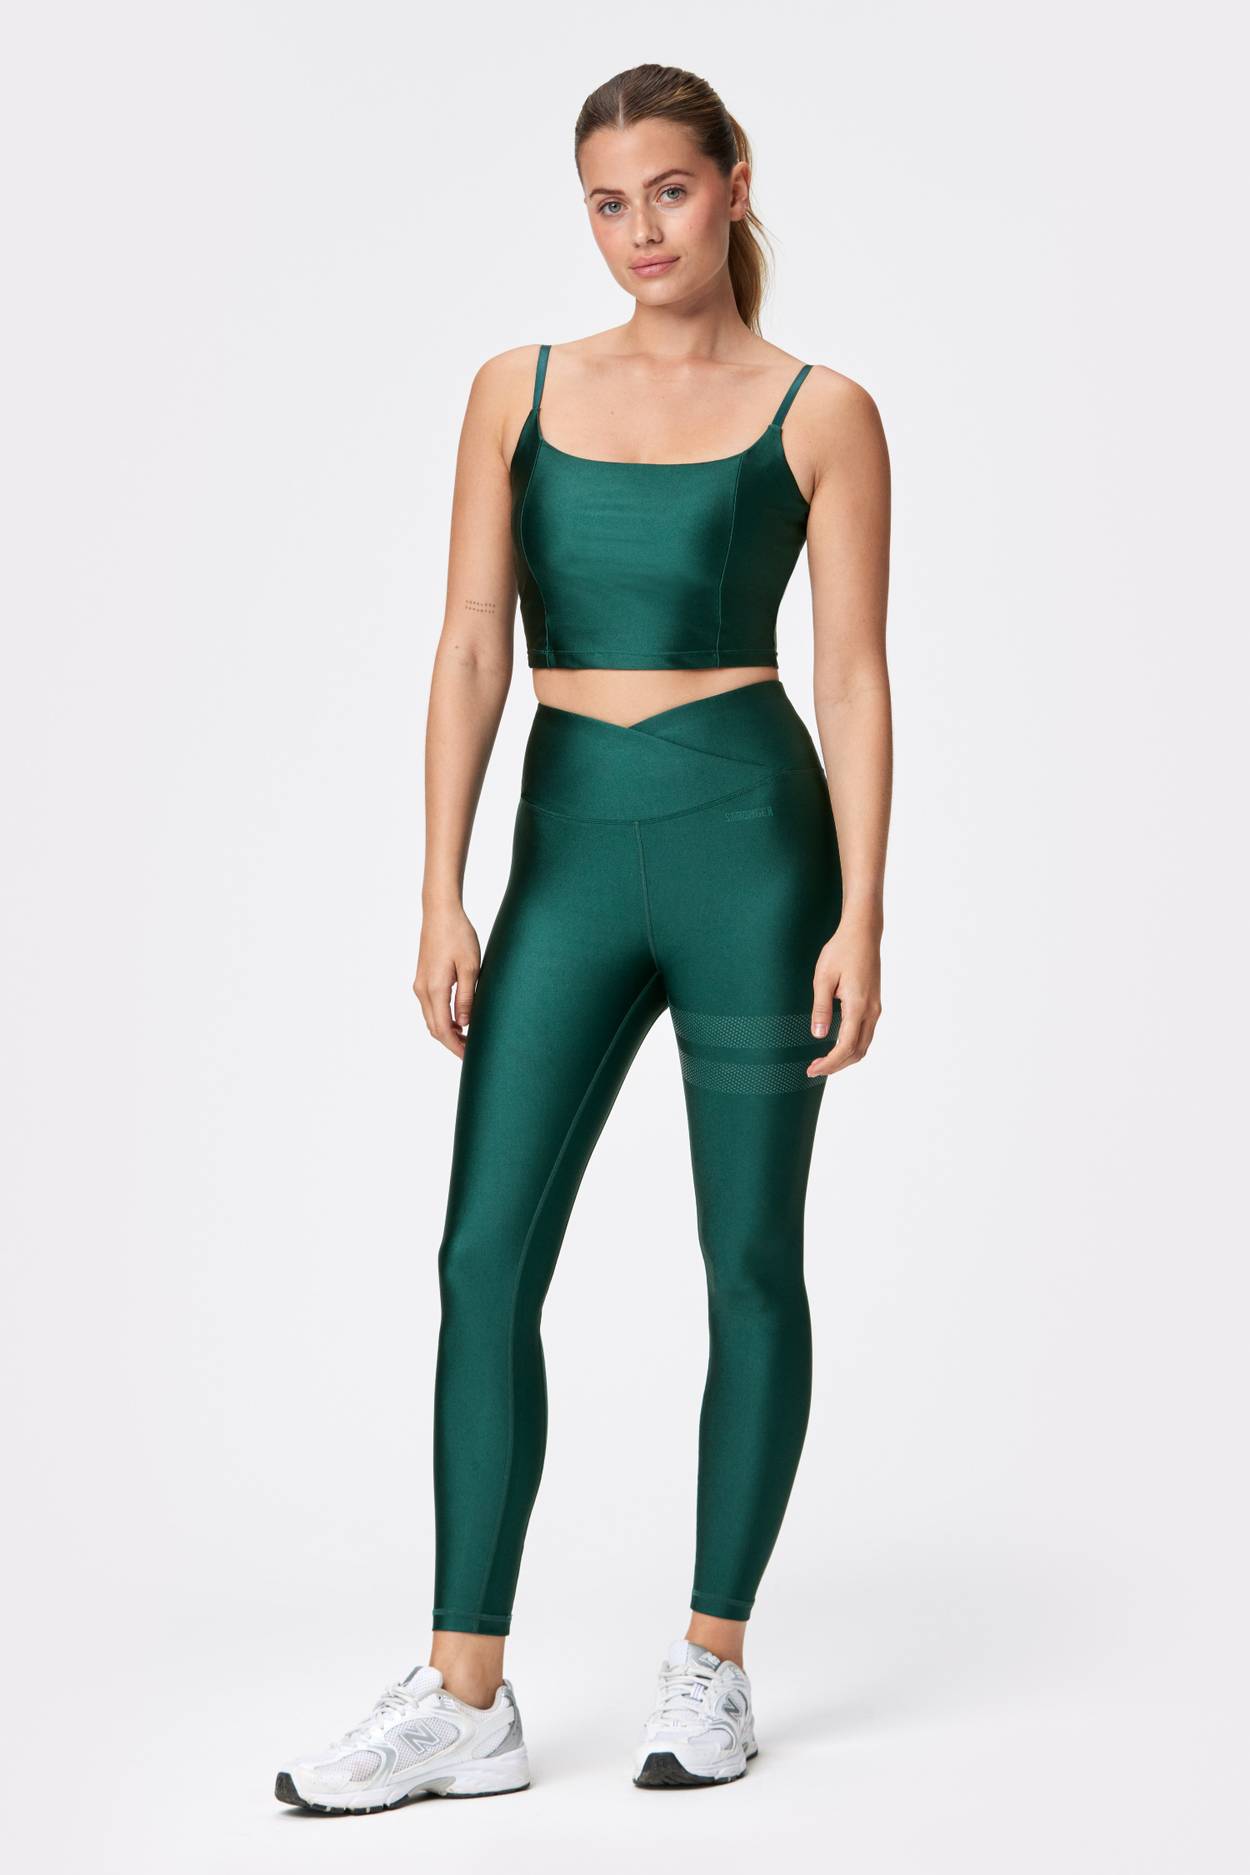  FRODOTGV Twirl Swirl Green Yoga Leggings for Women